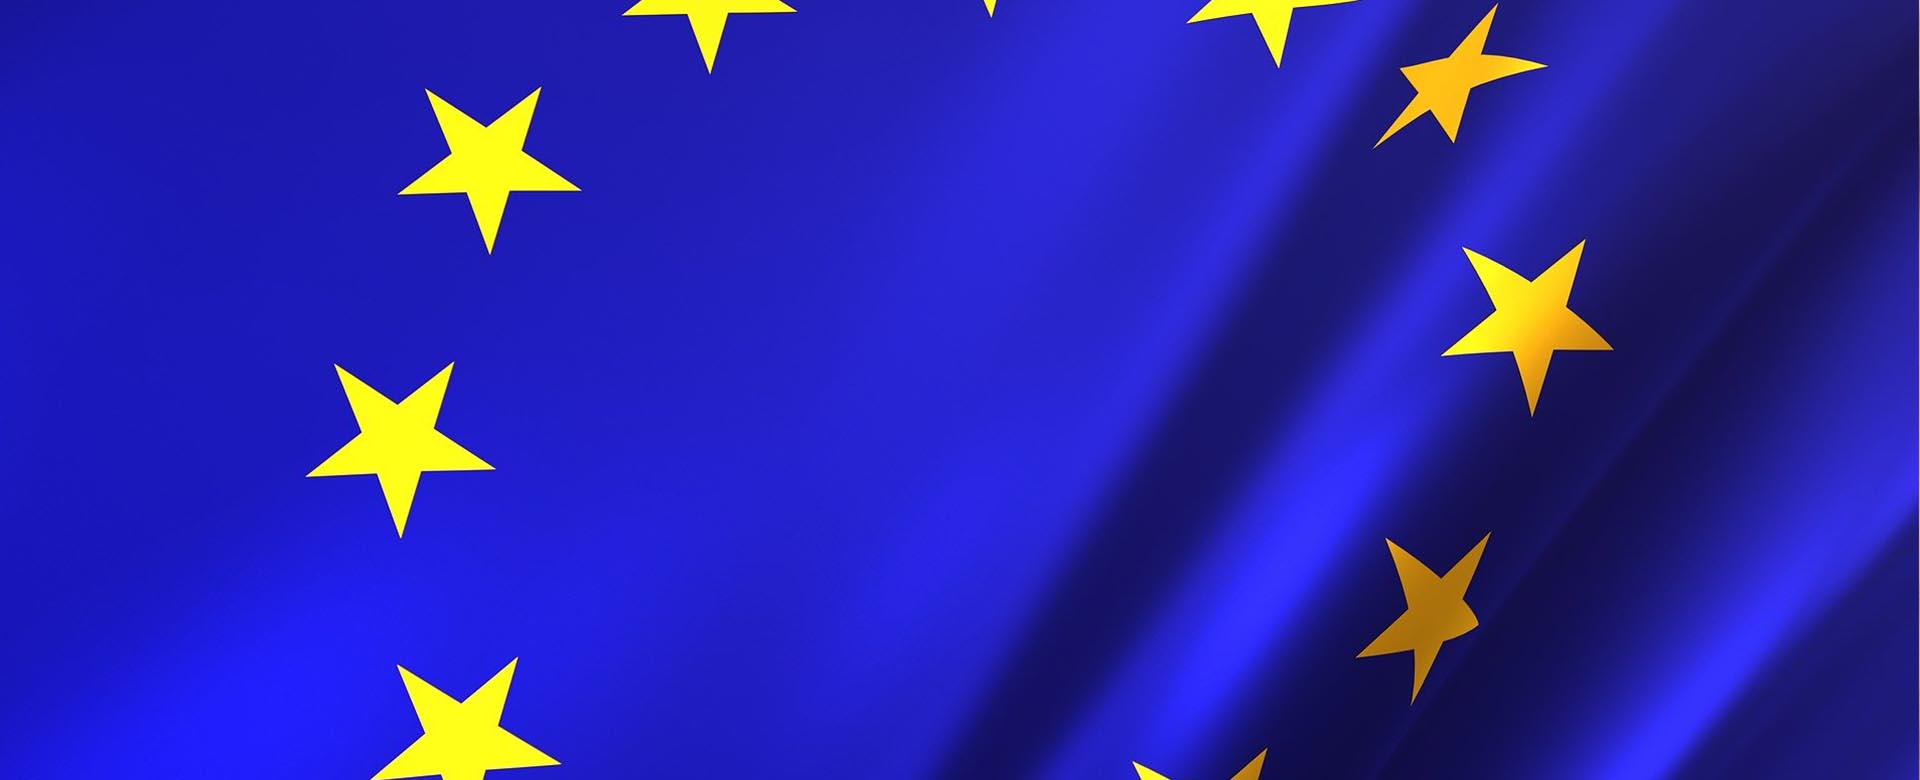 SOSTEs teser till europaparlamentsvalet 2019: Ett demokratiskt Europa förutsätter ett fritt och starkt medborgarsamhälle